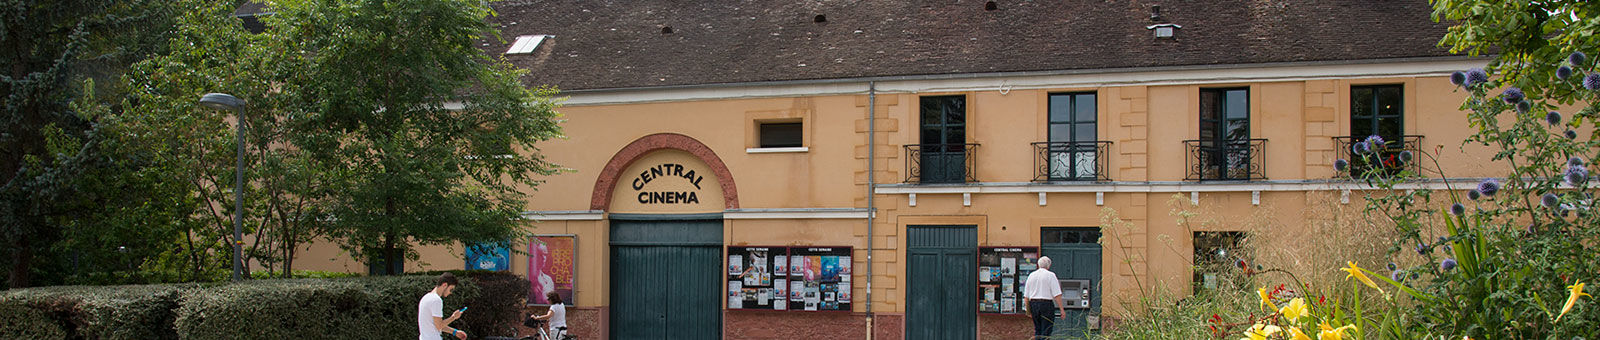 Le Central cinéma, place de la mairie à Gif-sur-Yvette (vallée).